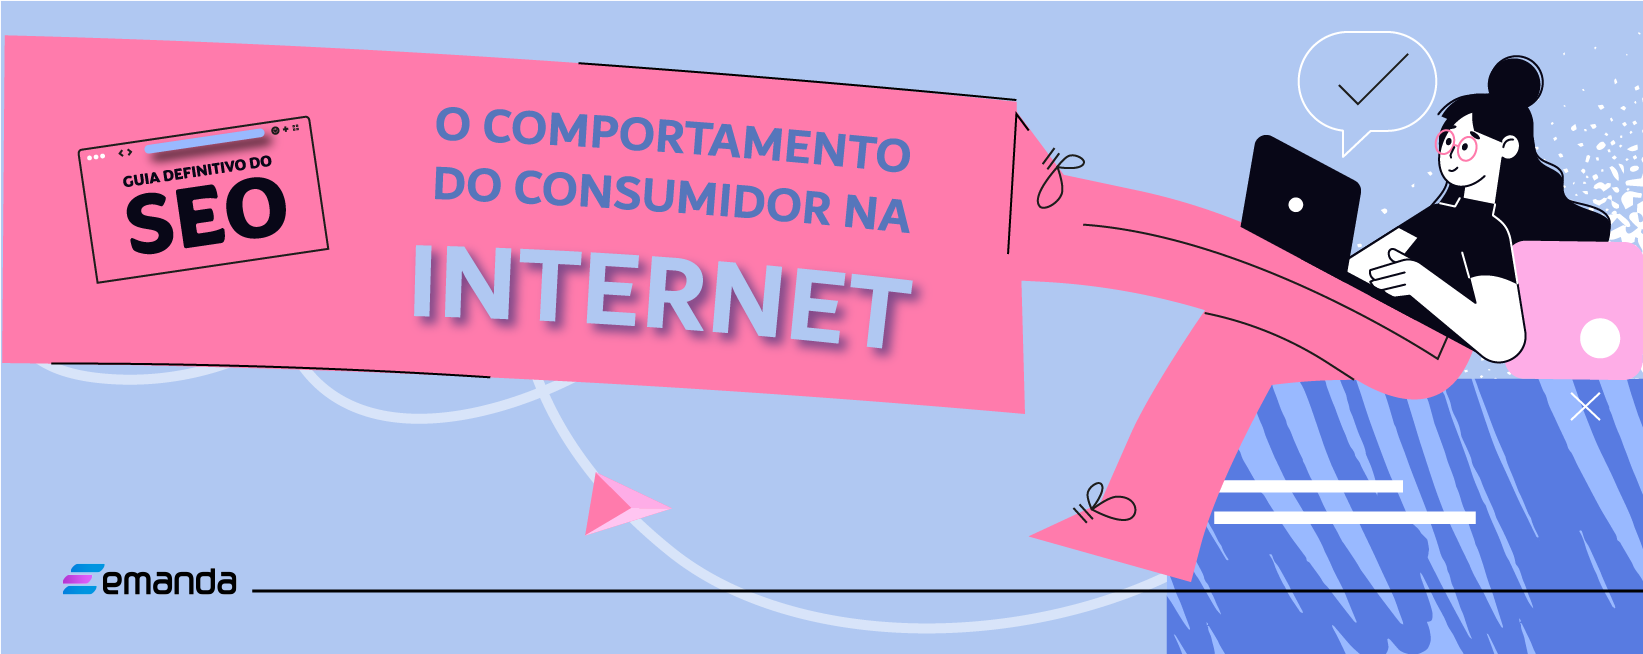 You are currently viewing O guia definitivo do SEO: o comportamento do consumidor na internet